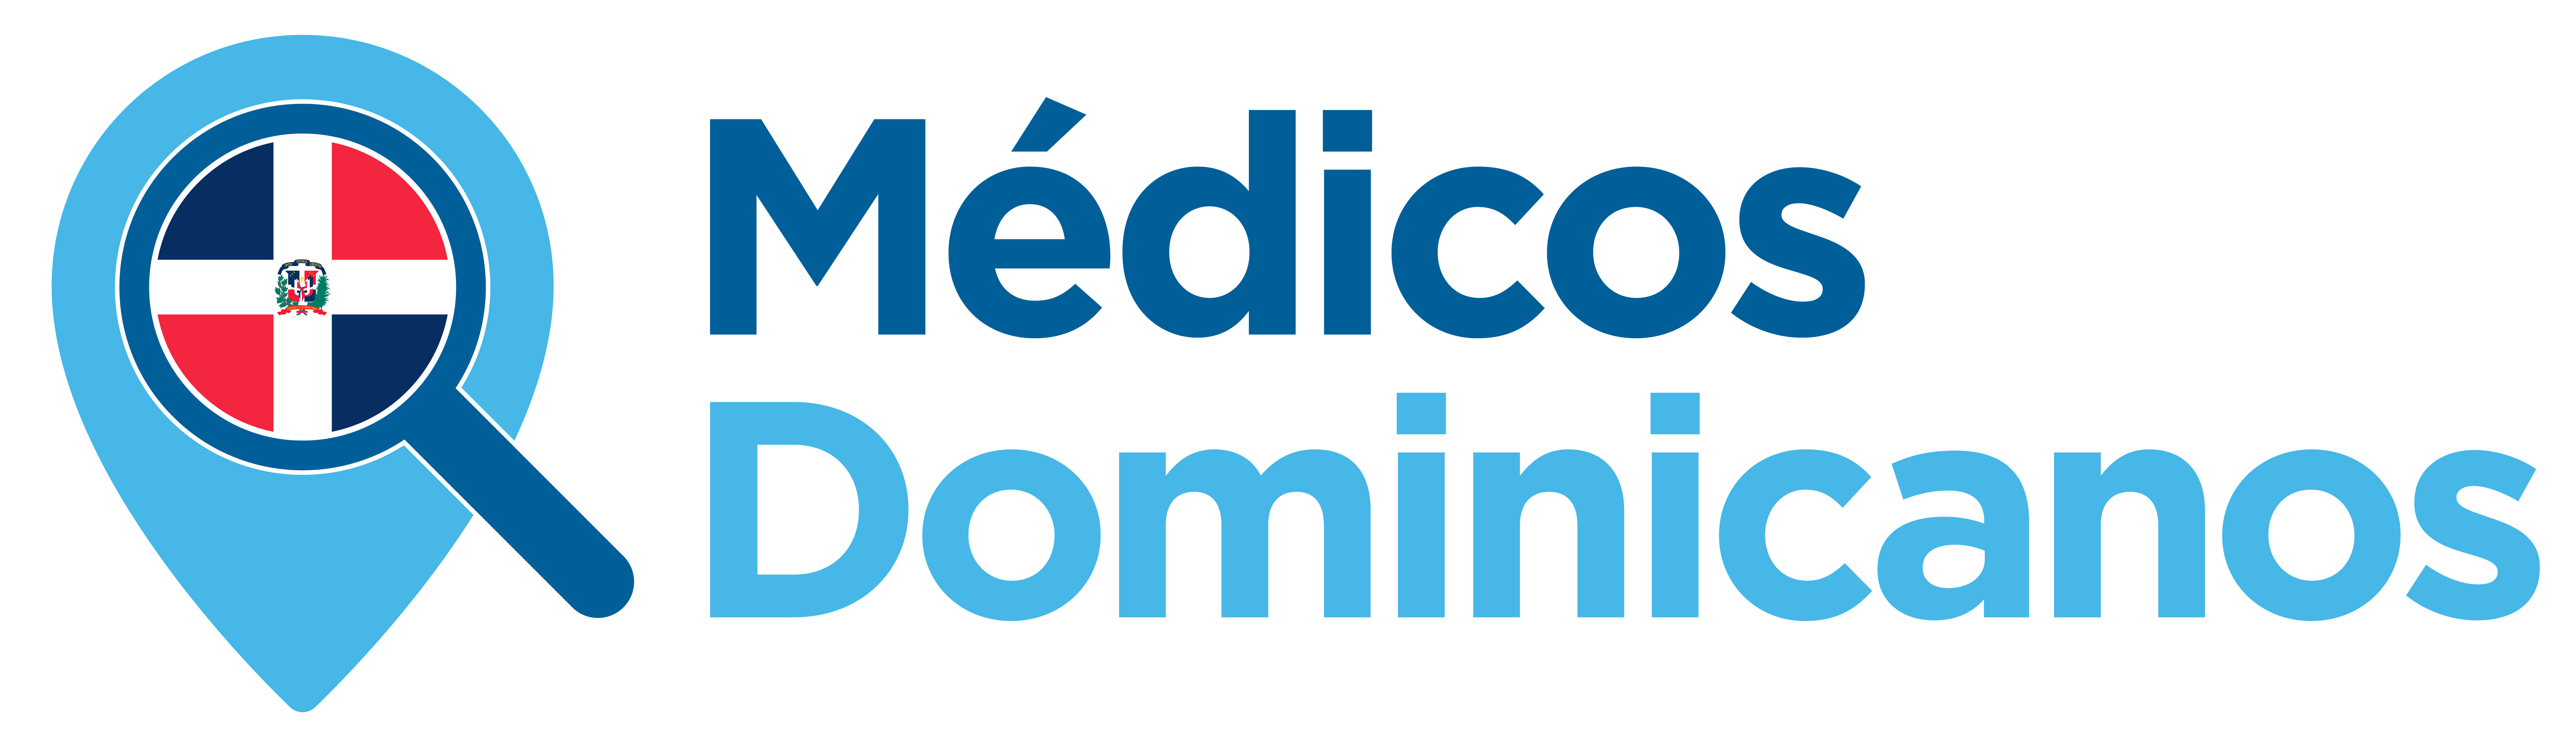 Medicos Dominicanos